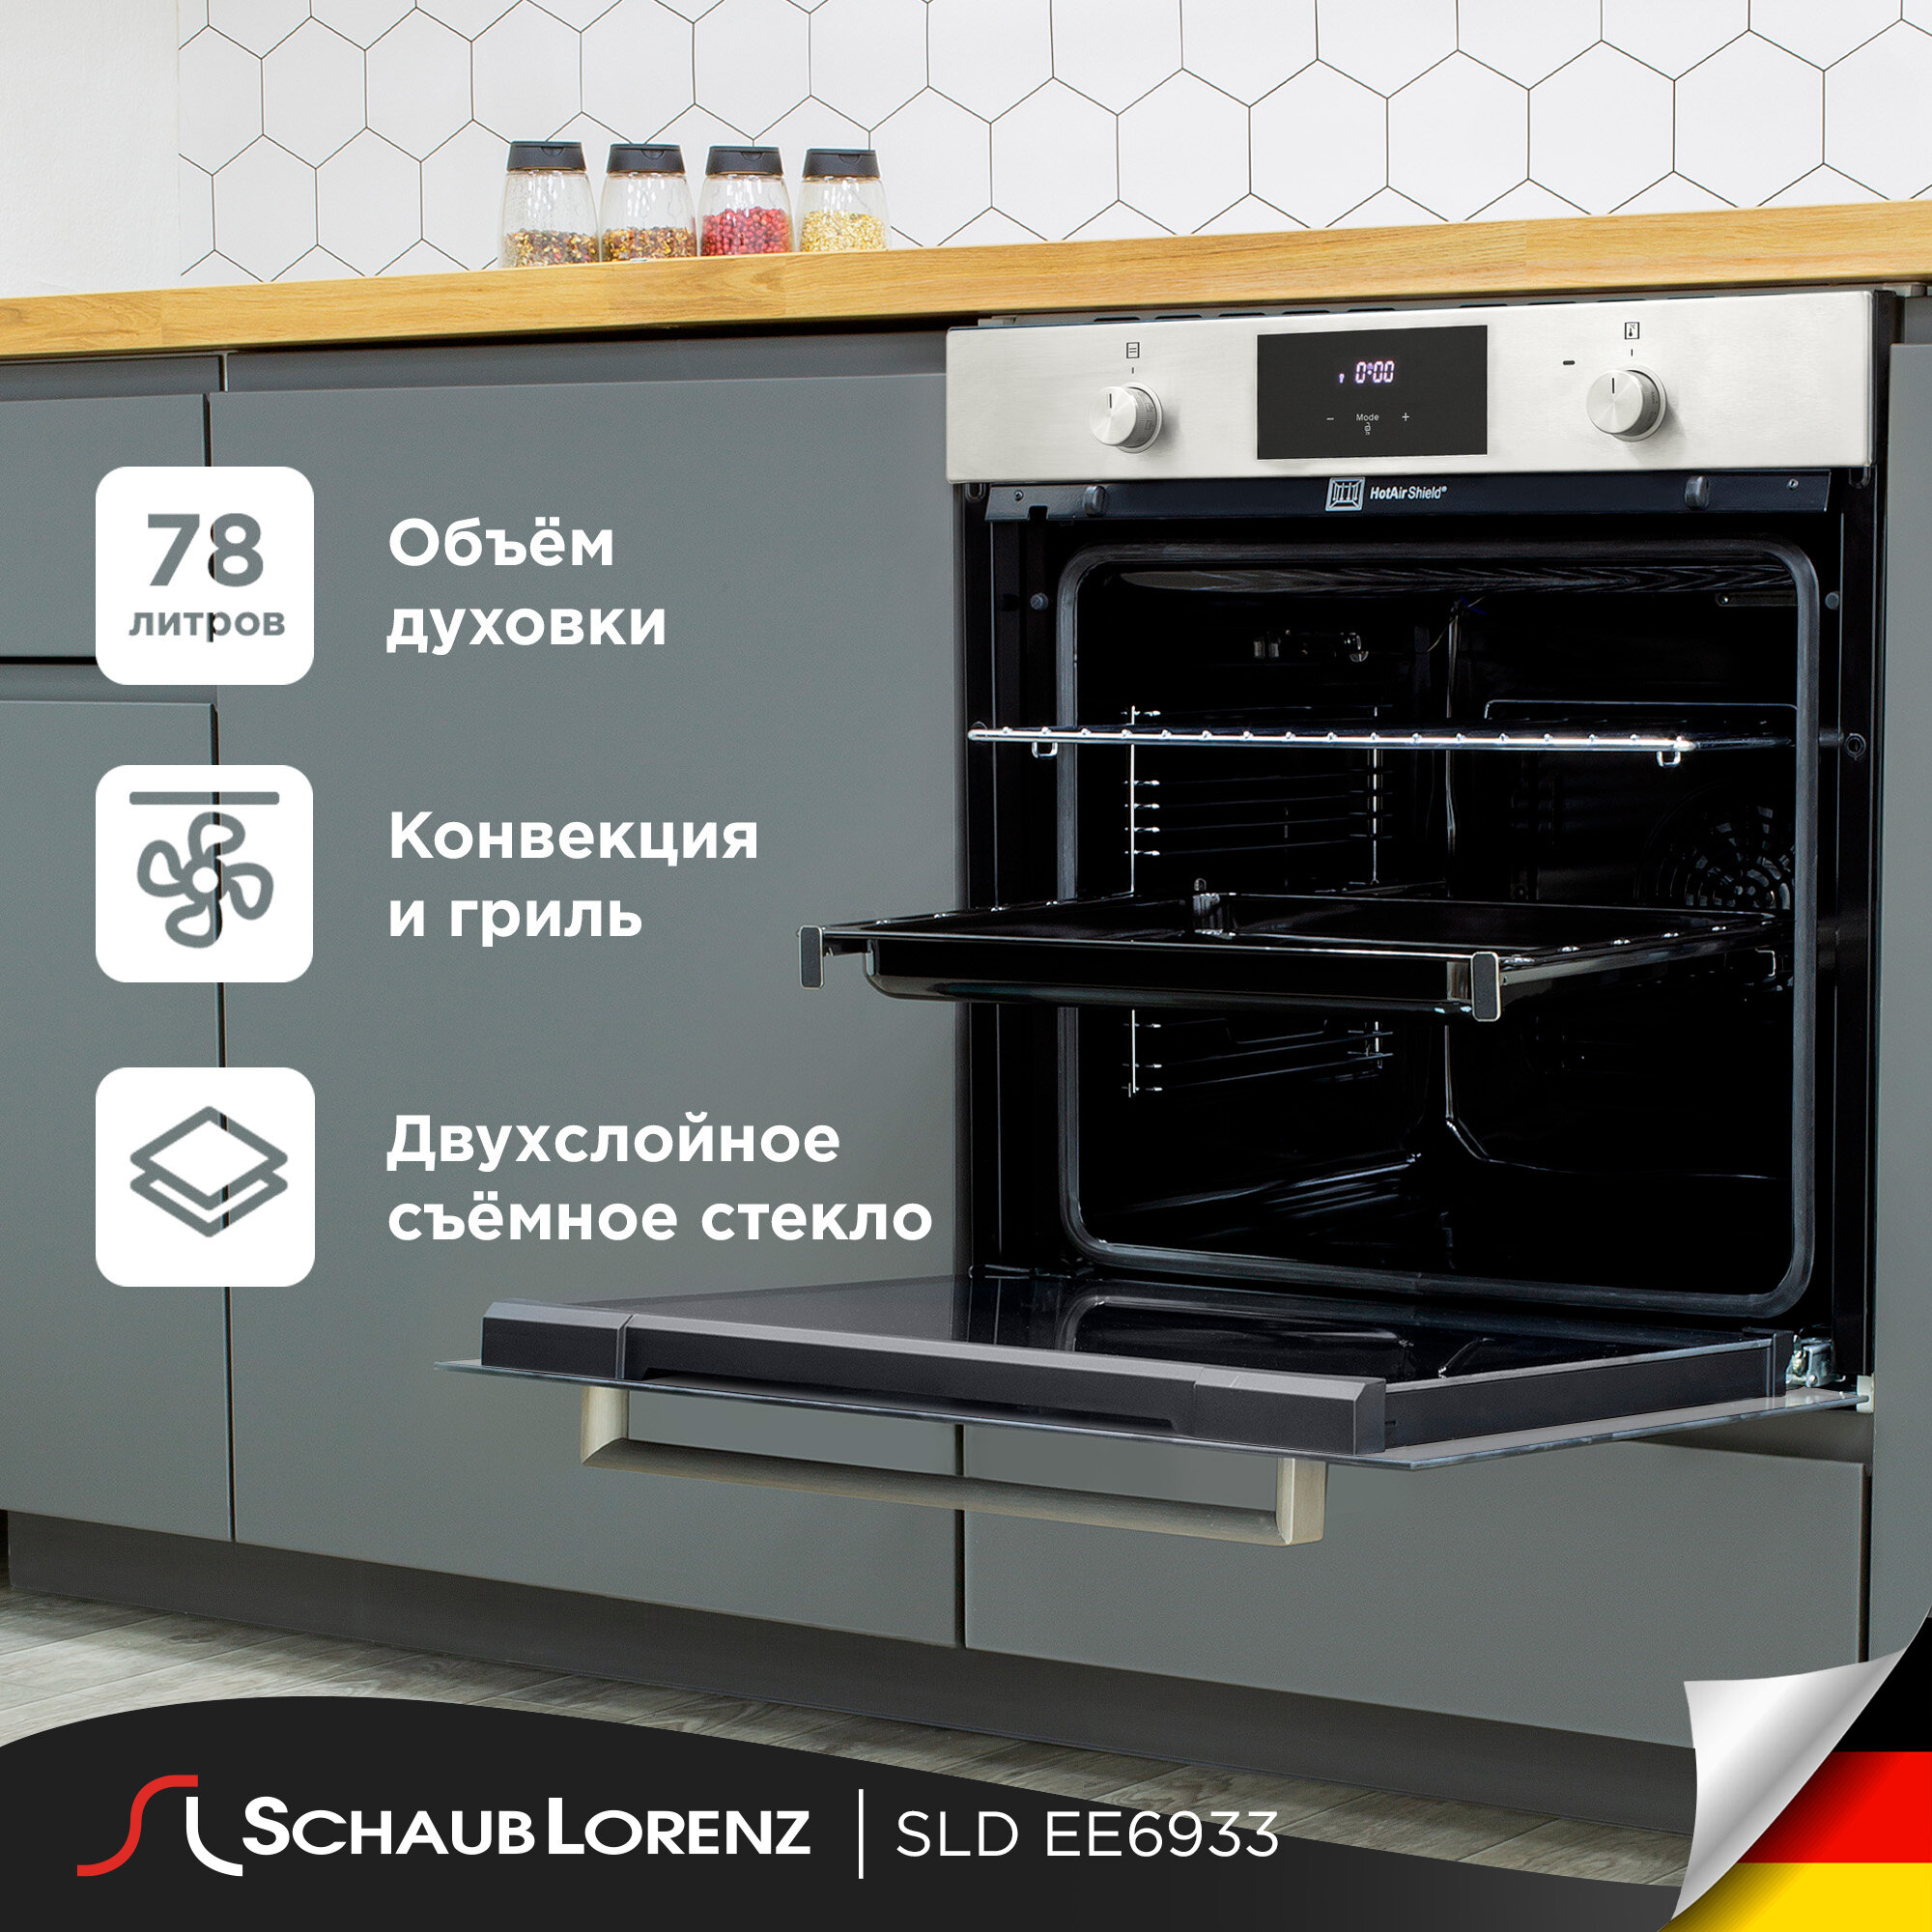 Духовой шкаф встраиваемый Schaub Lorenz SLB EE6933, нержавеющая сталь, 75 л, конвекция, гриль, пицца.